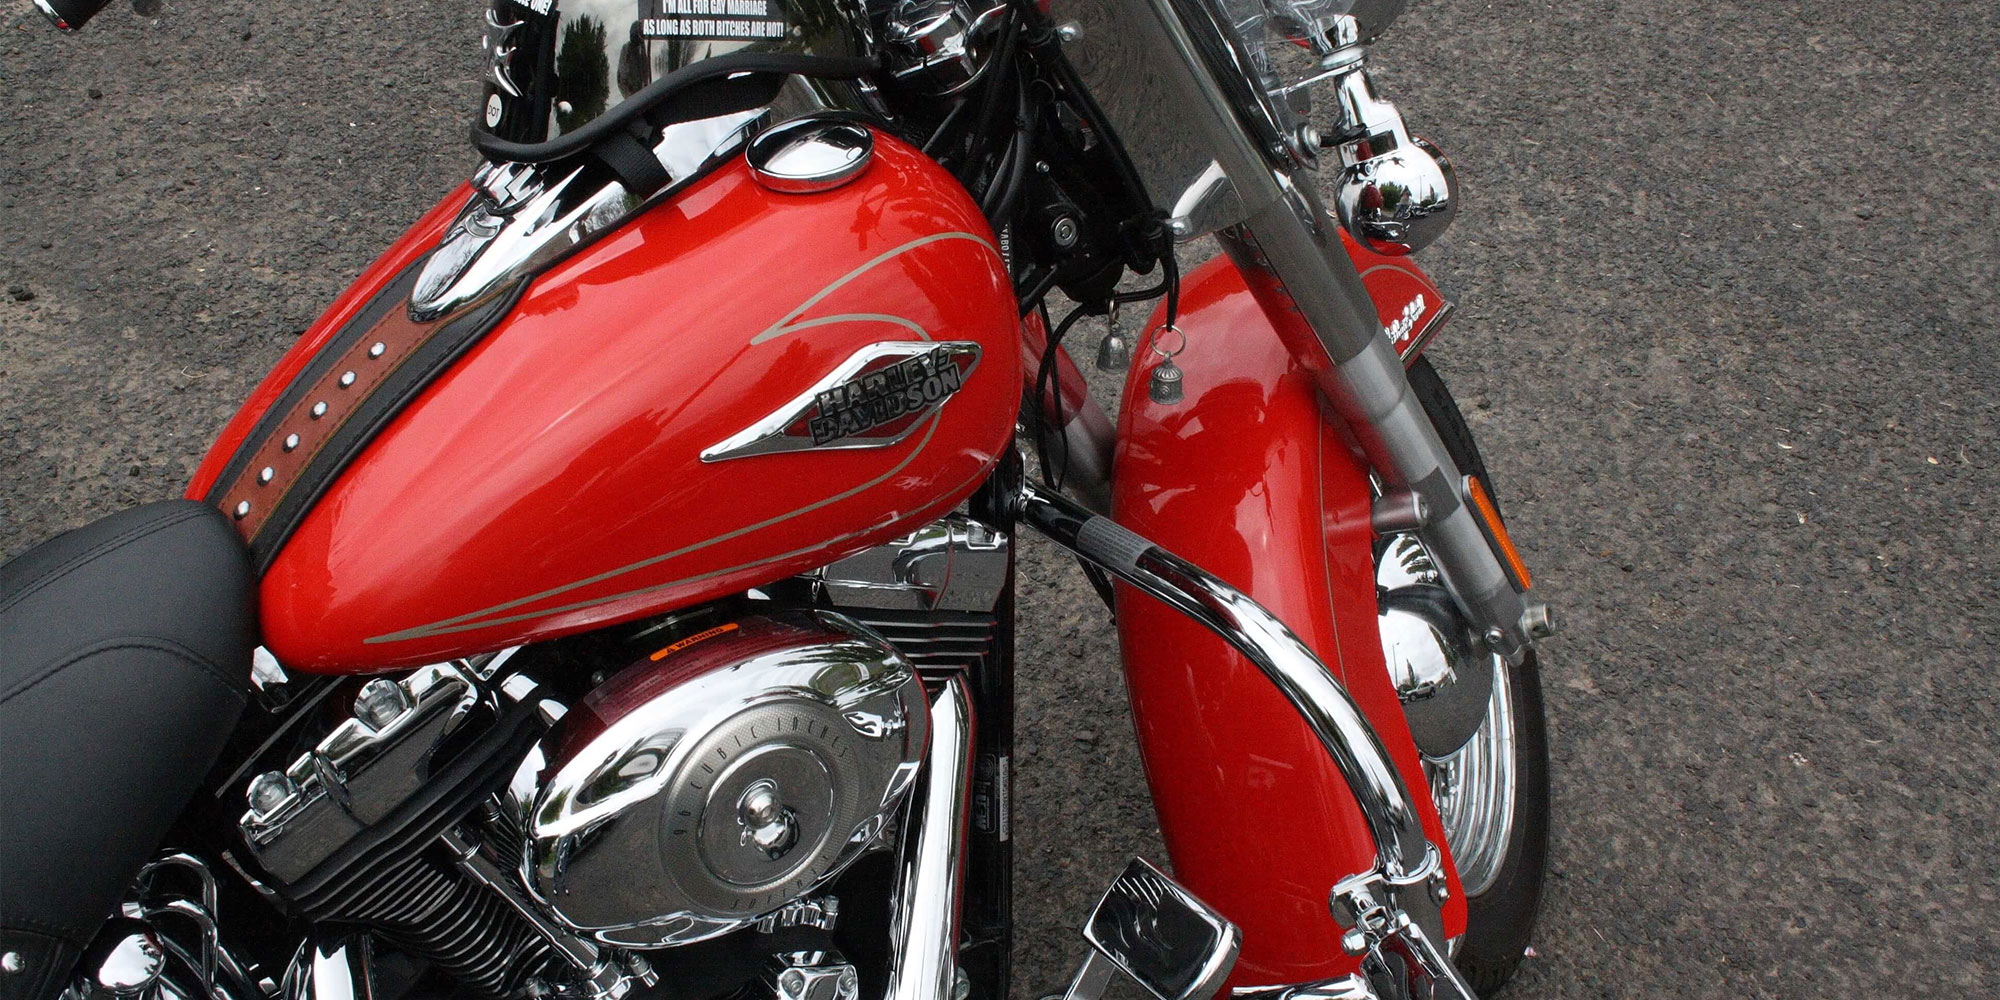 Une moto propre et brillante montrant son réservoir et son garde-boue rouge brillant